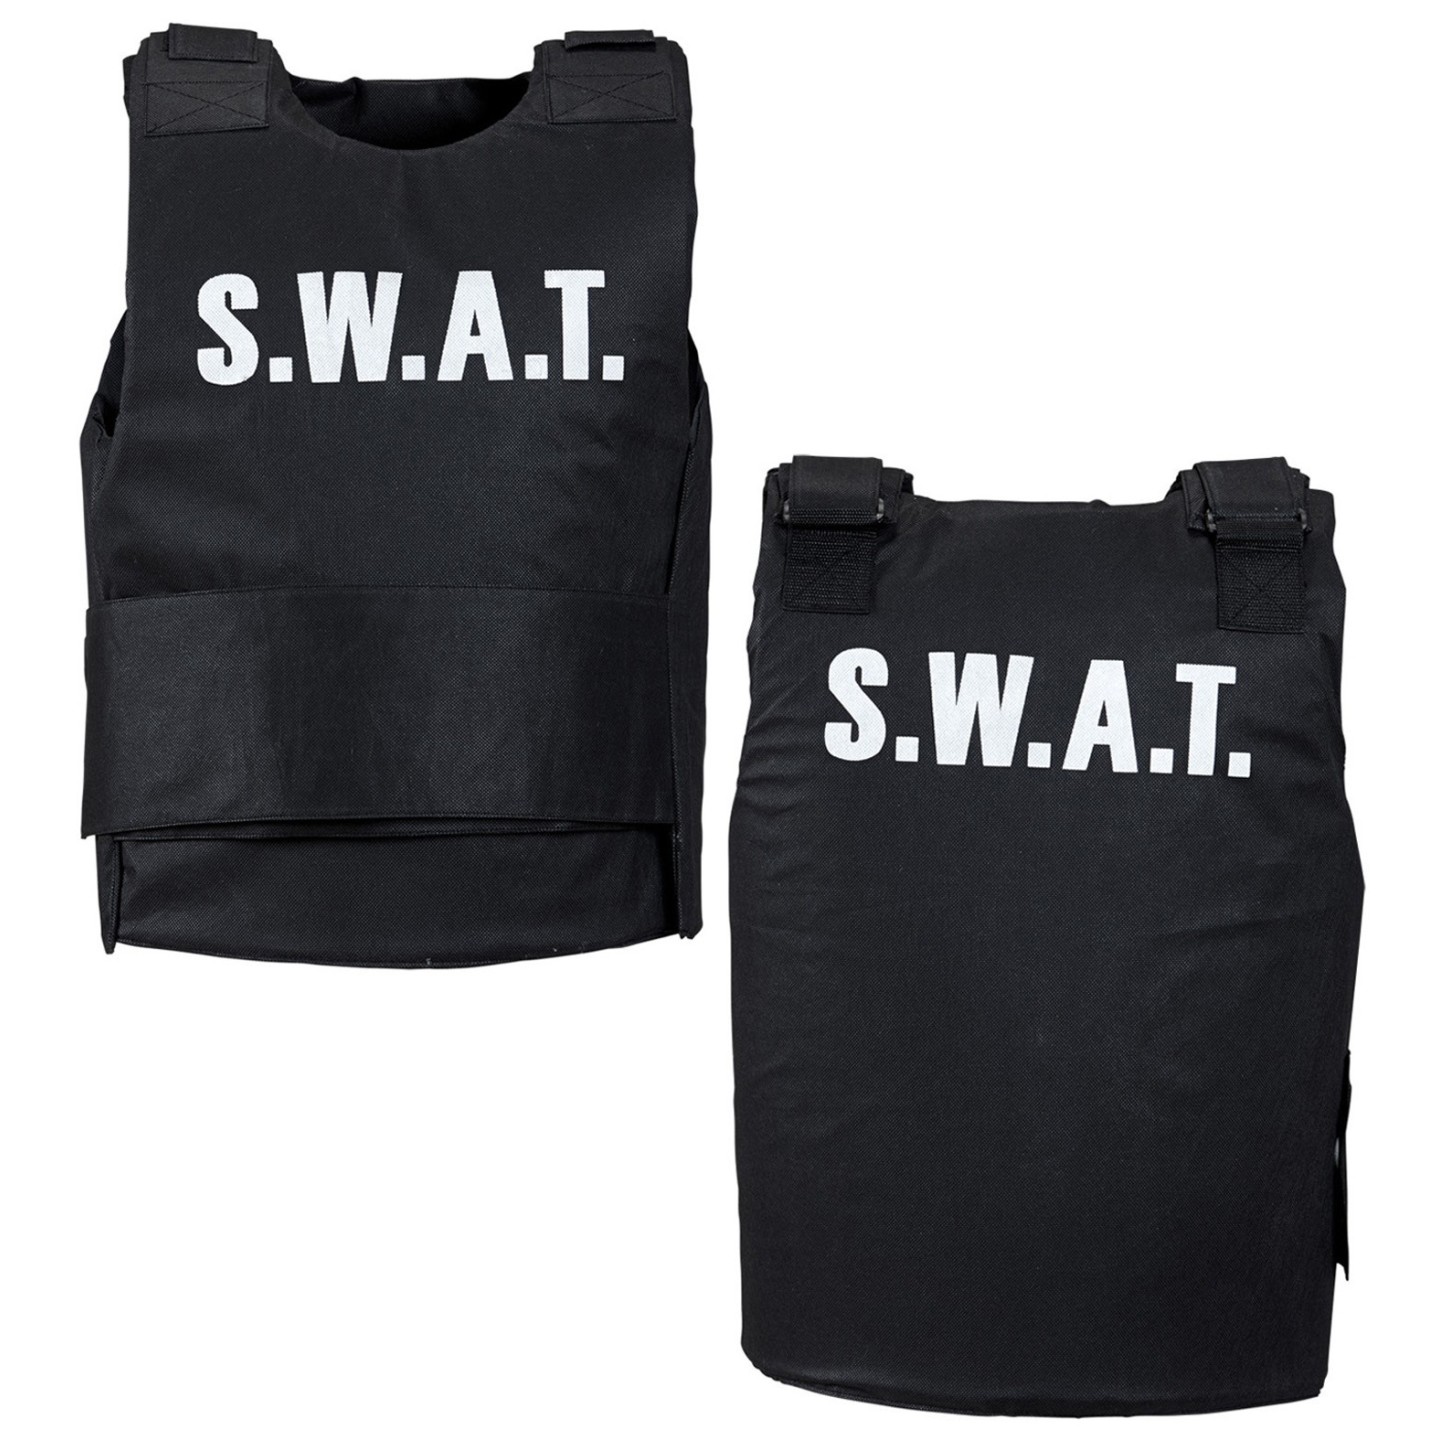 groef invoer Kilometers Kogelvrij SWAT vest - kostuum bestellen ? | Jokershop Carnavalswinkel